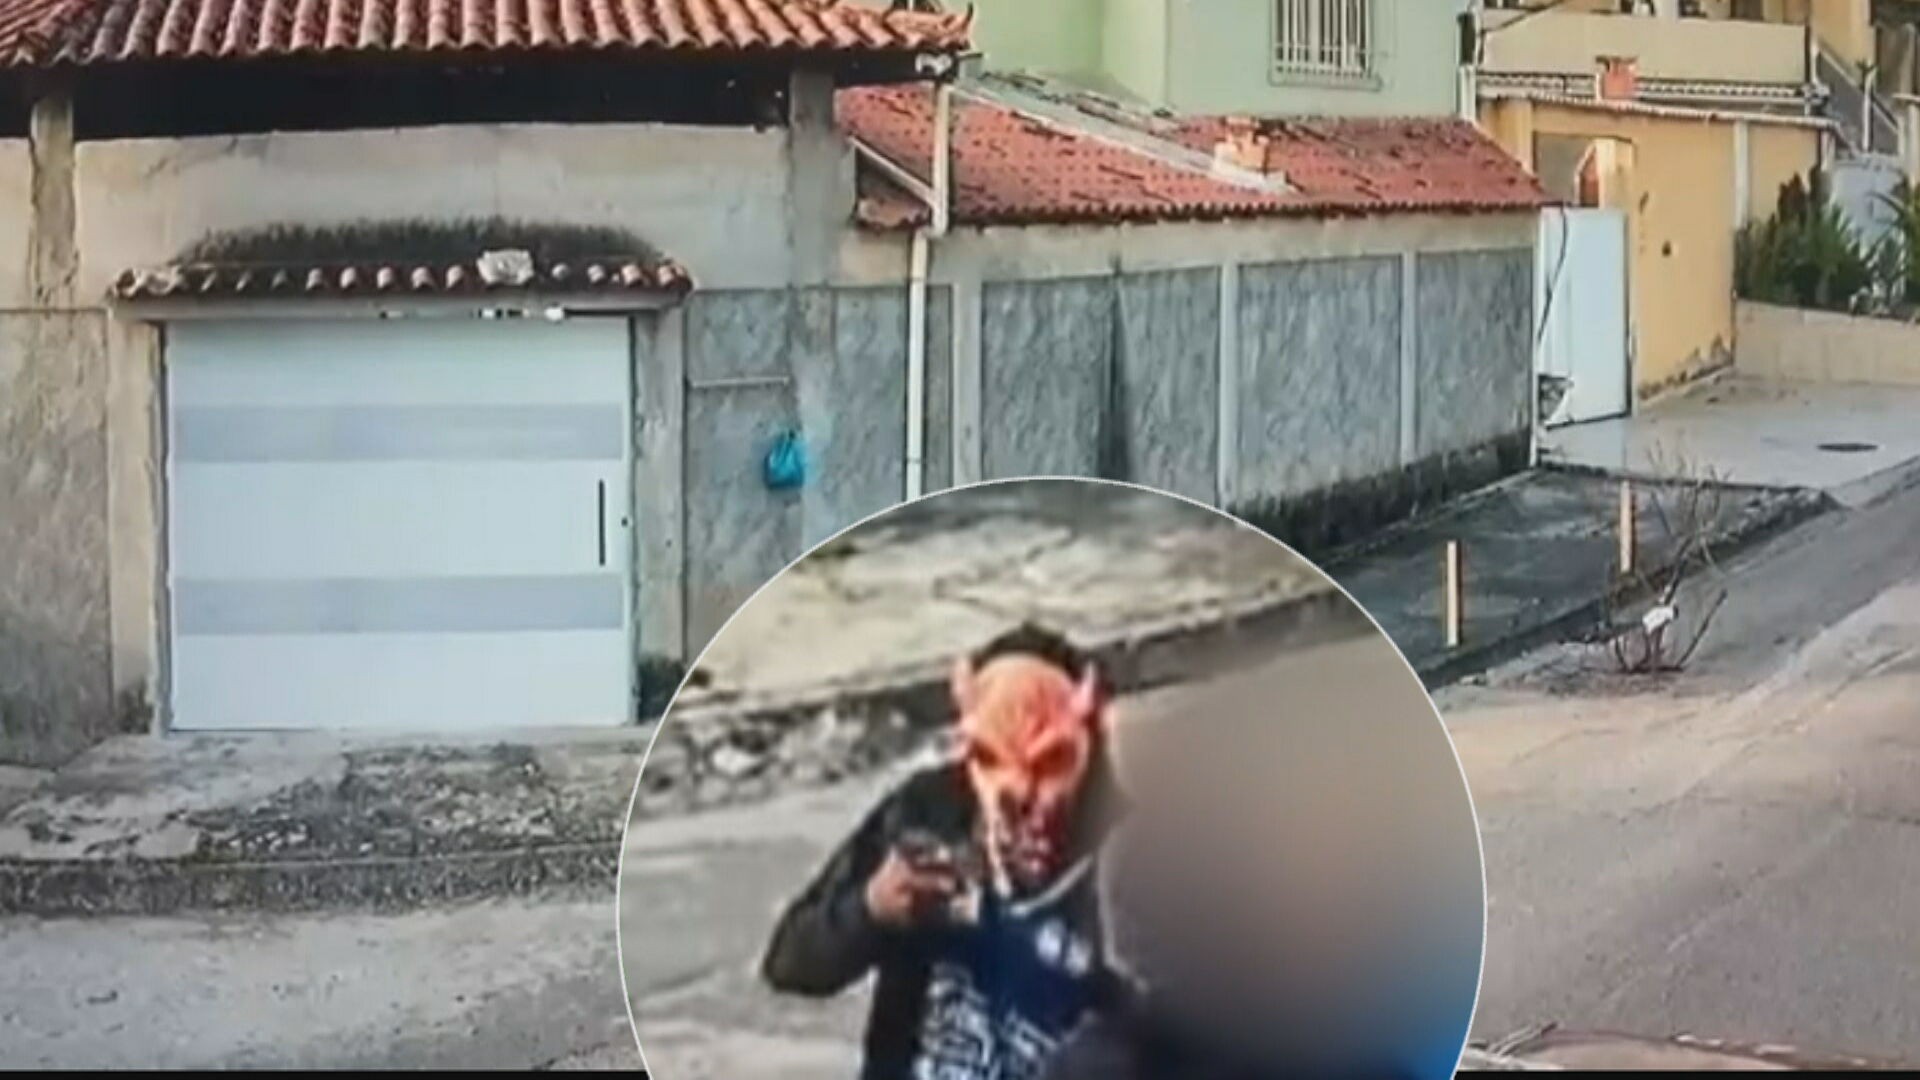 Homens que usaram máscaras de monstro para sequestrar homem em São Gonçalo são presos pela polícia